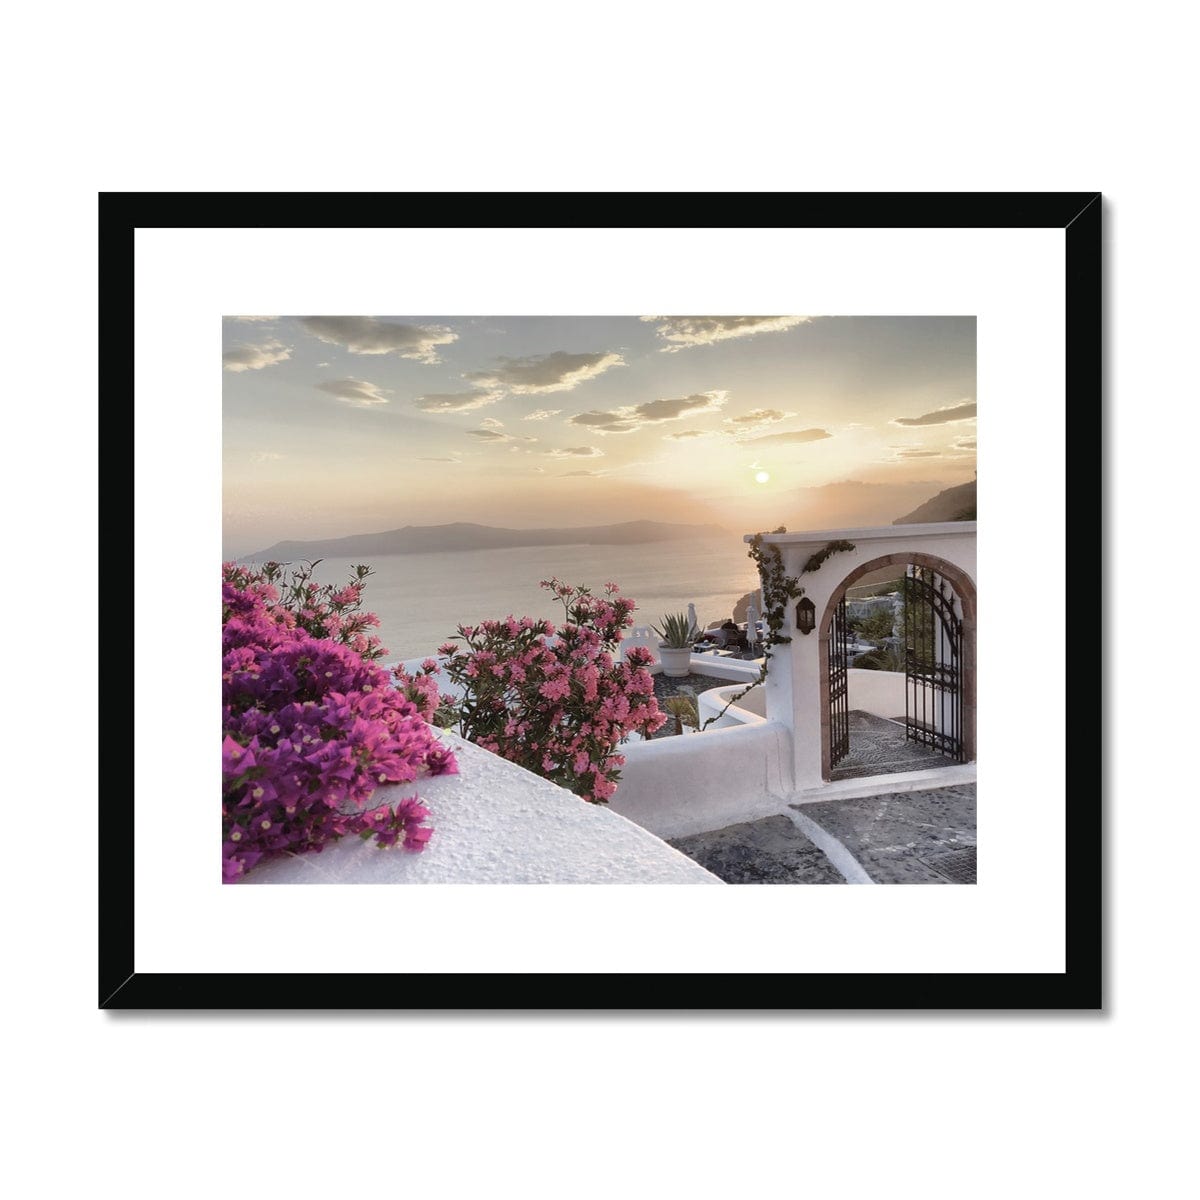 Adam Davies Framed 20"x16" / Black Frame Santorini Sunset Framed & Mounted Print